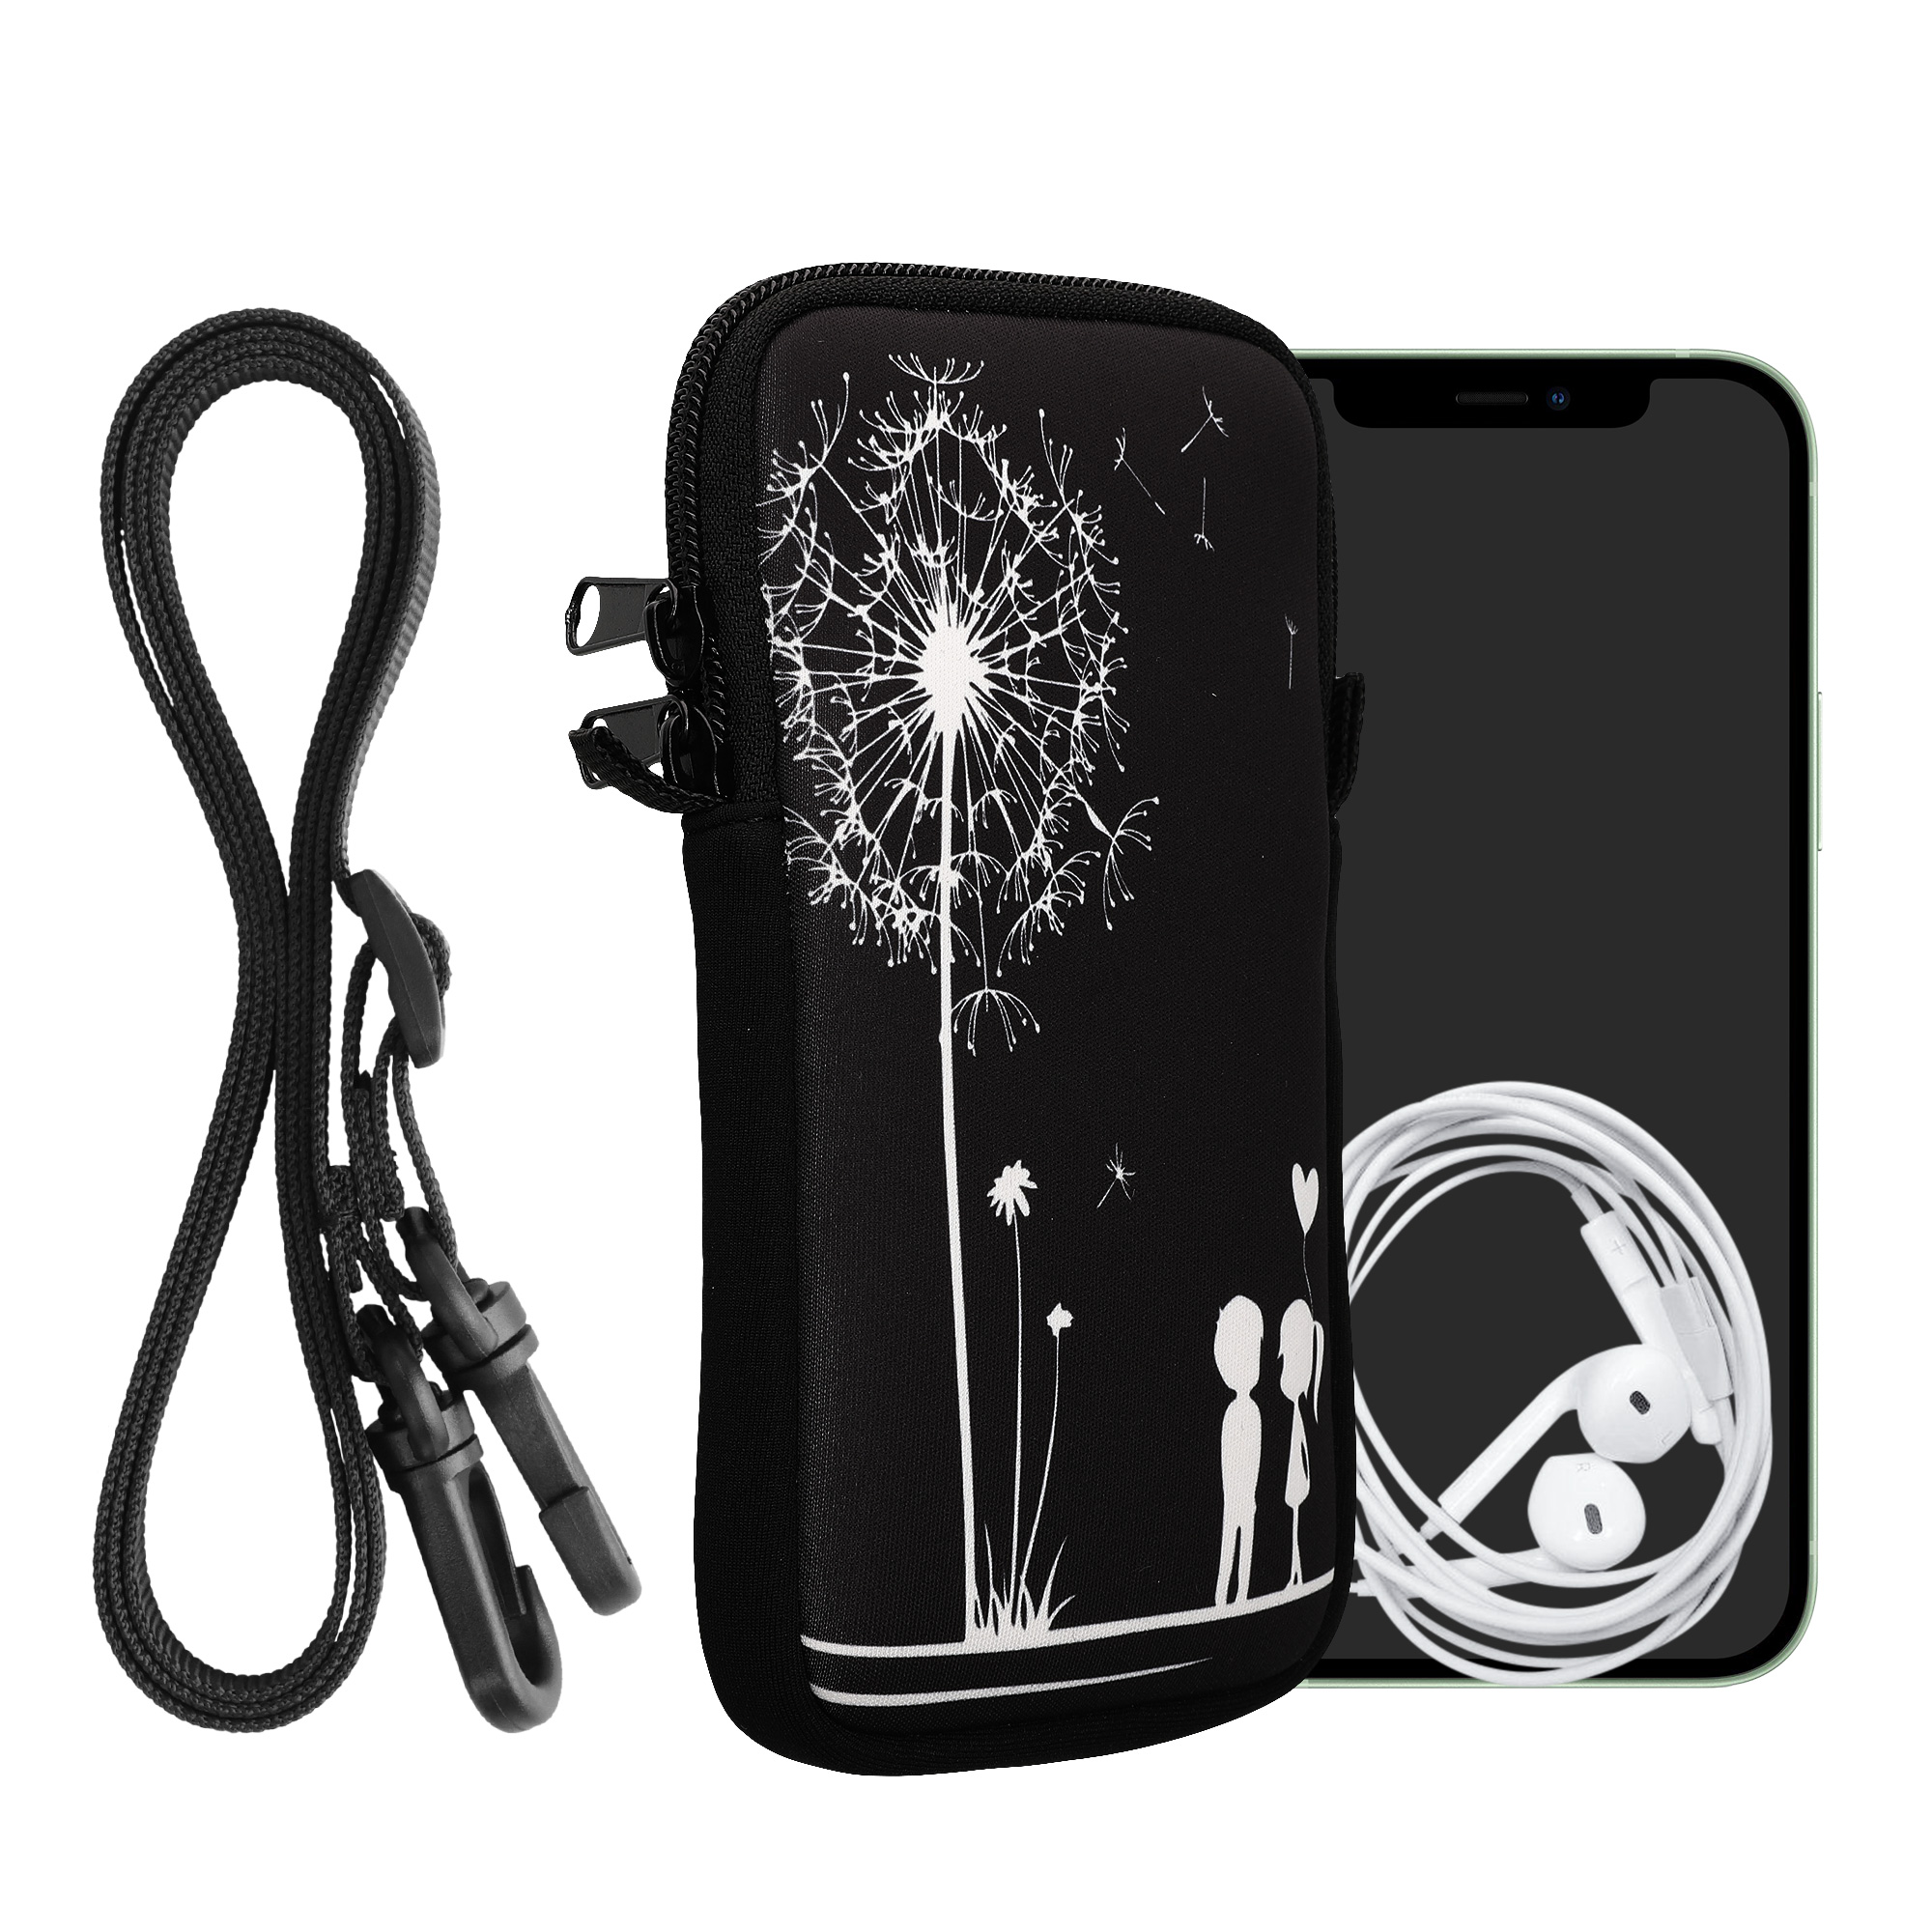 Tasche für Smartphones XXL - 7"